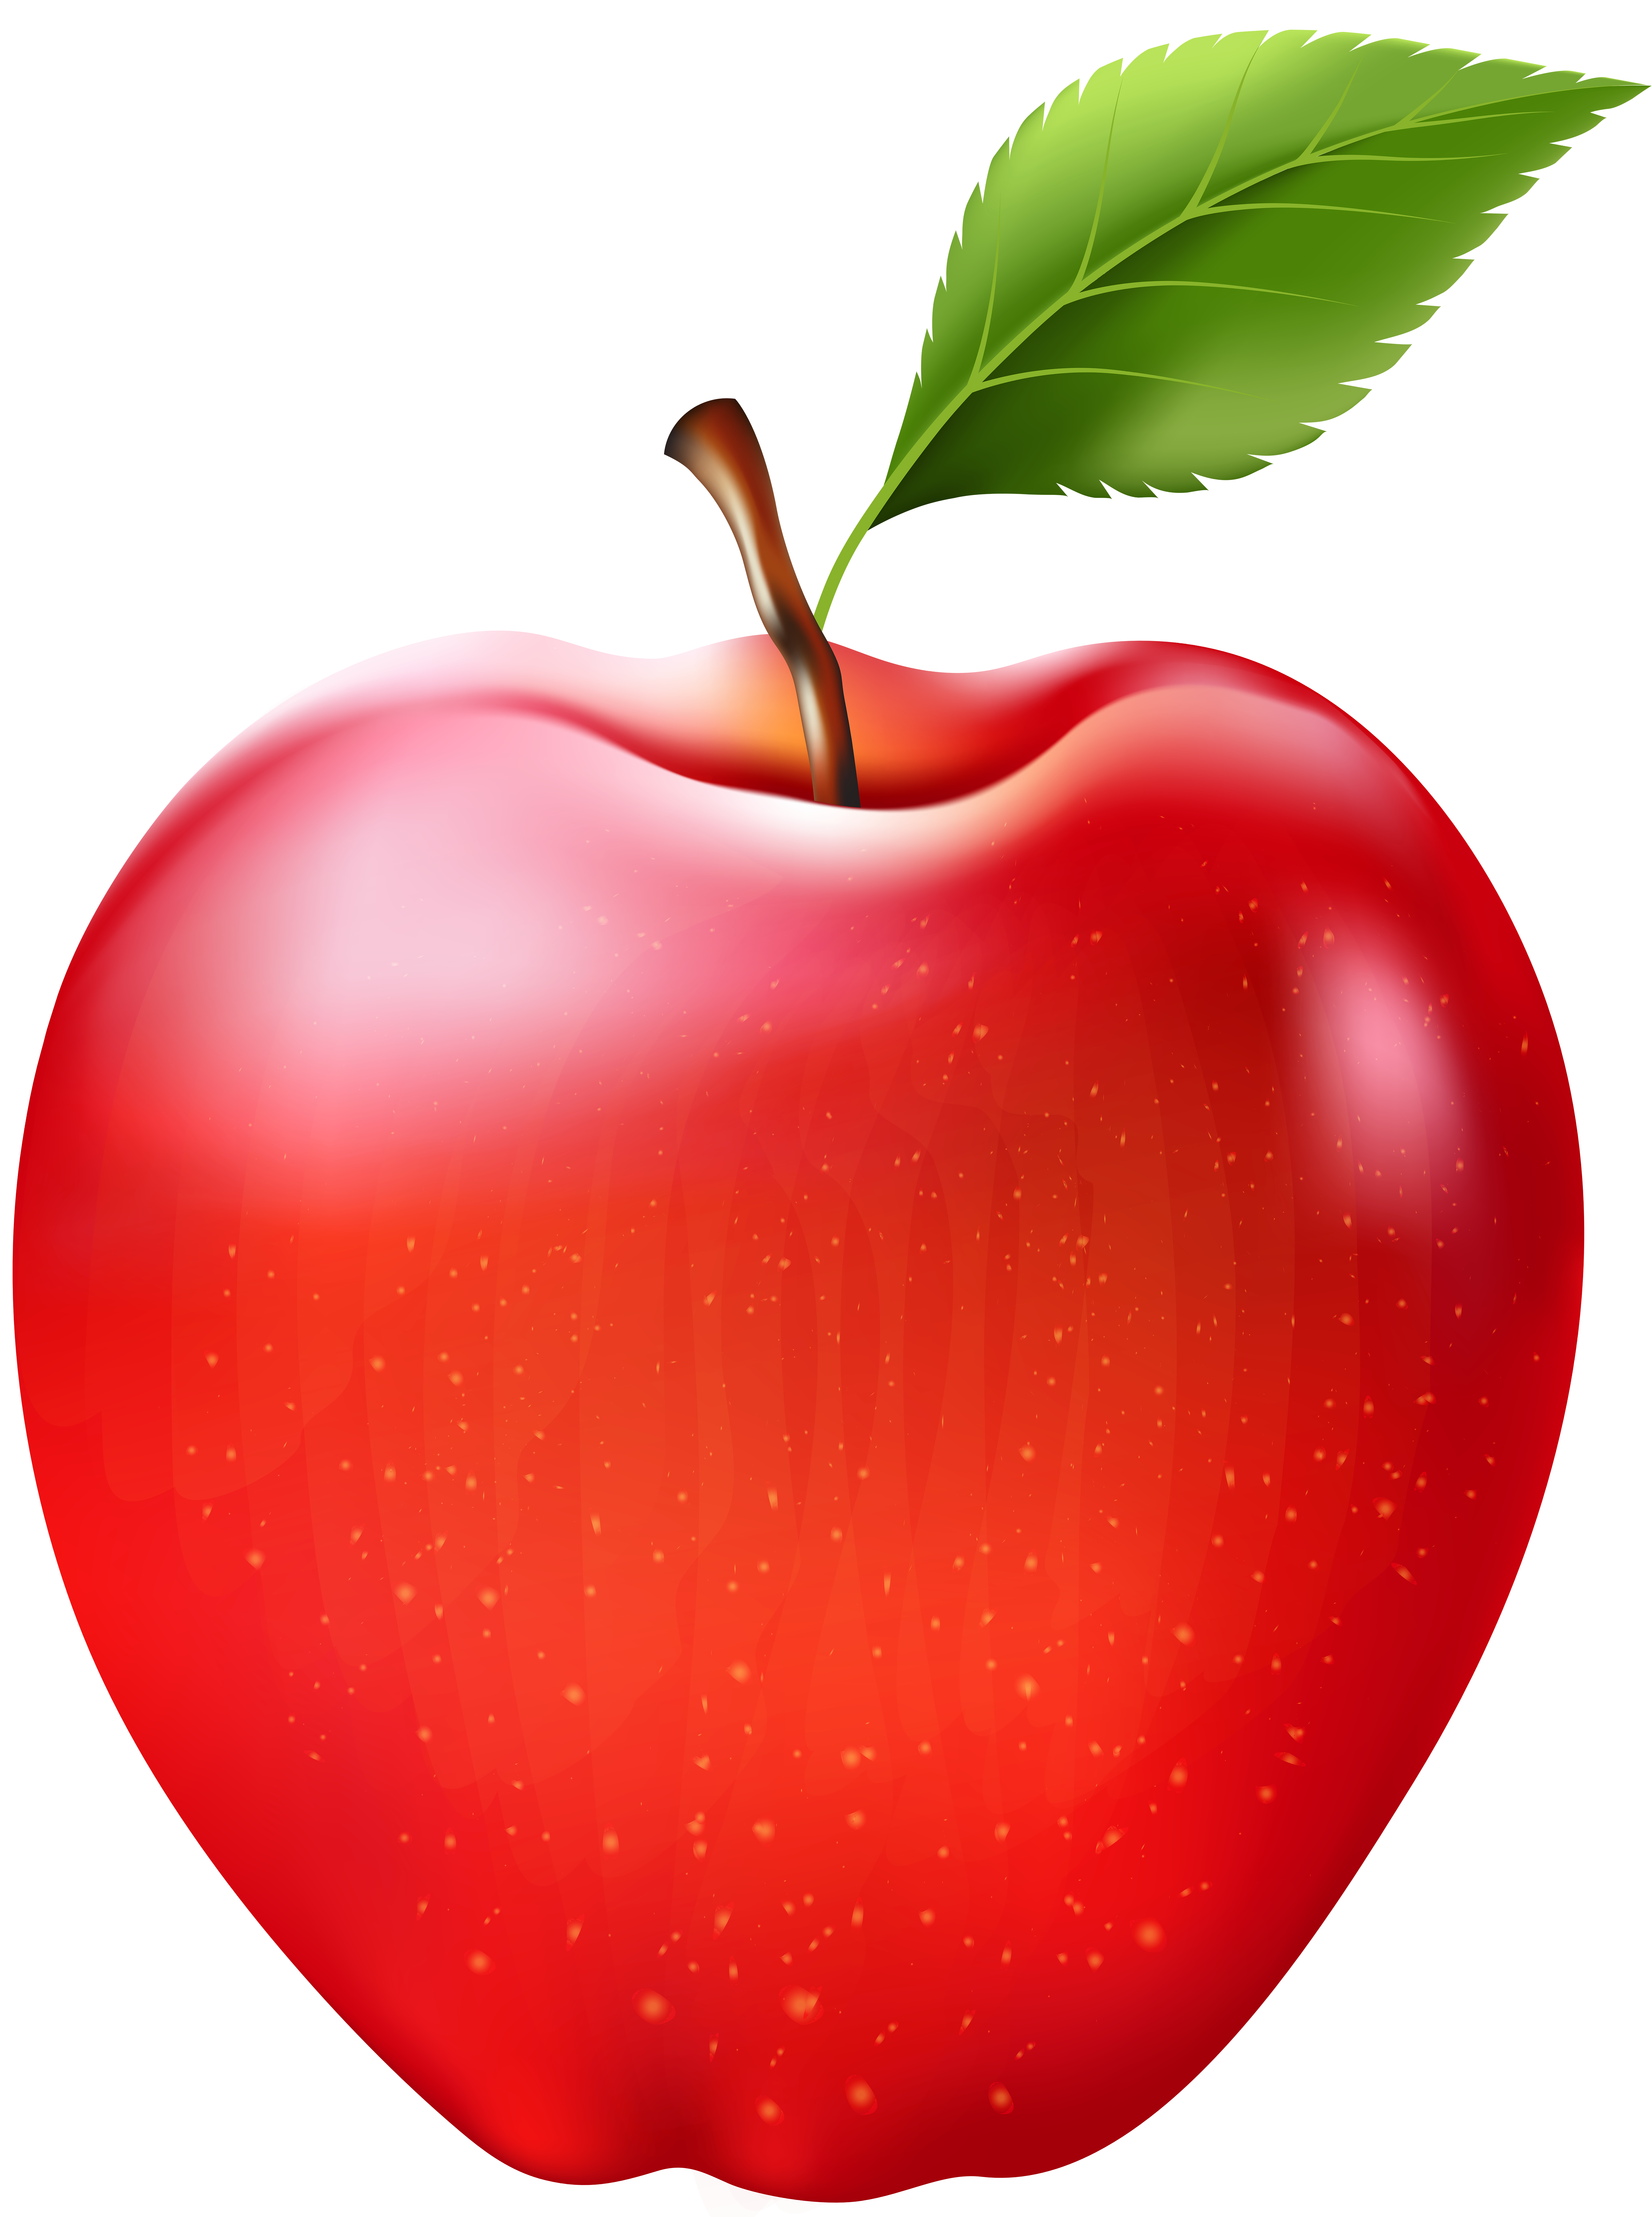 Clipart apples clip art. Apple transparent png image